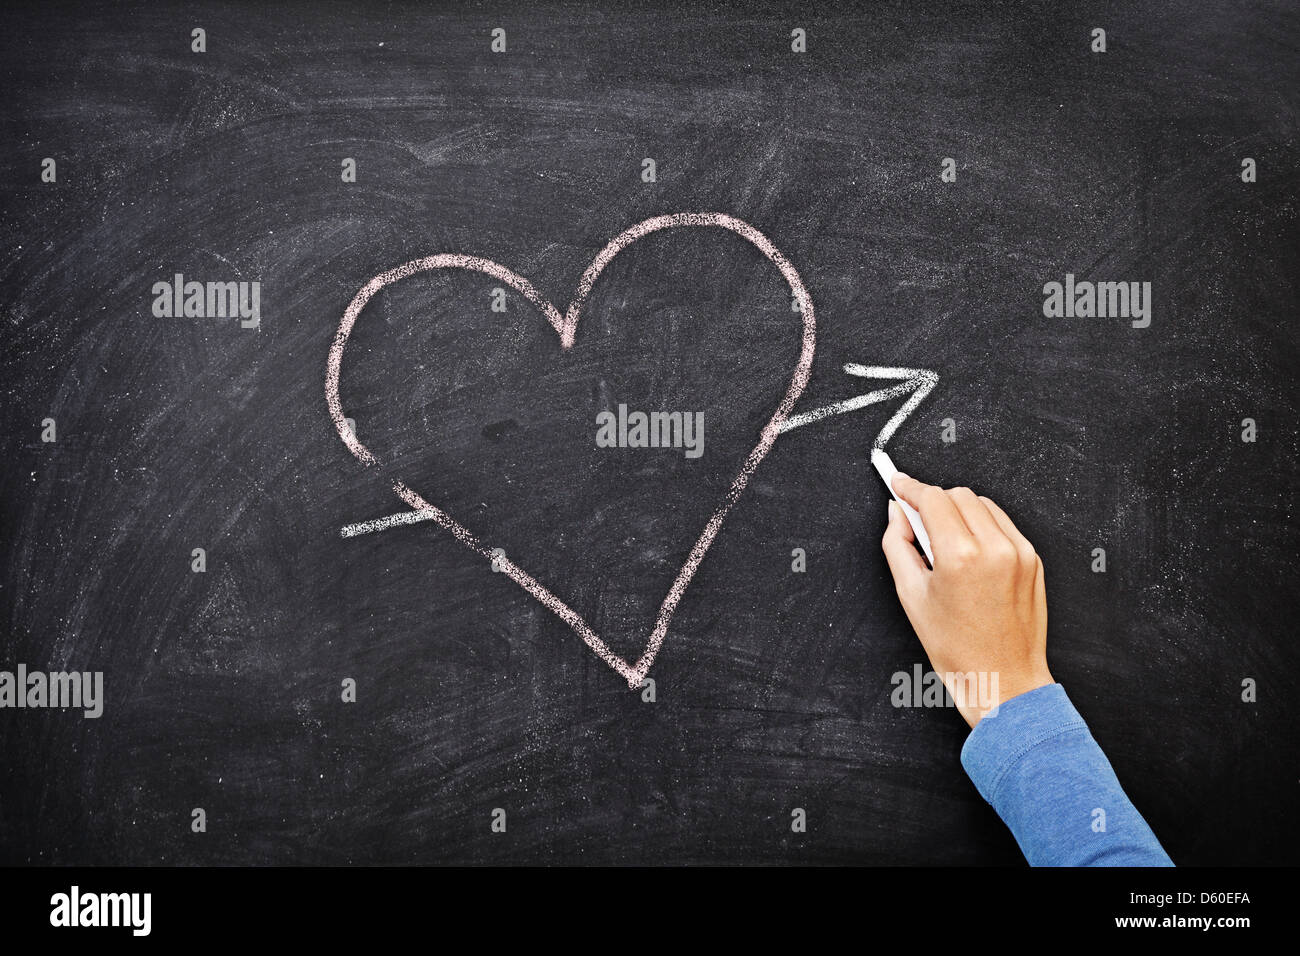 Dessin A La Main Coeur Avec La Craie Sur Tableau Noir Love Concept Photo Stock Alamy